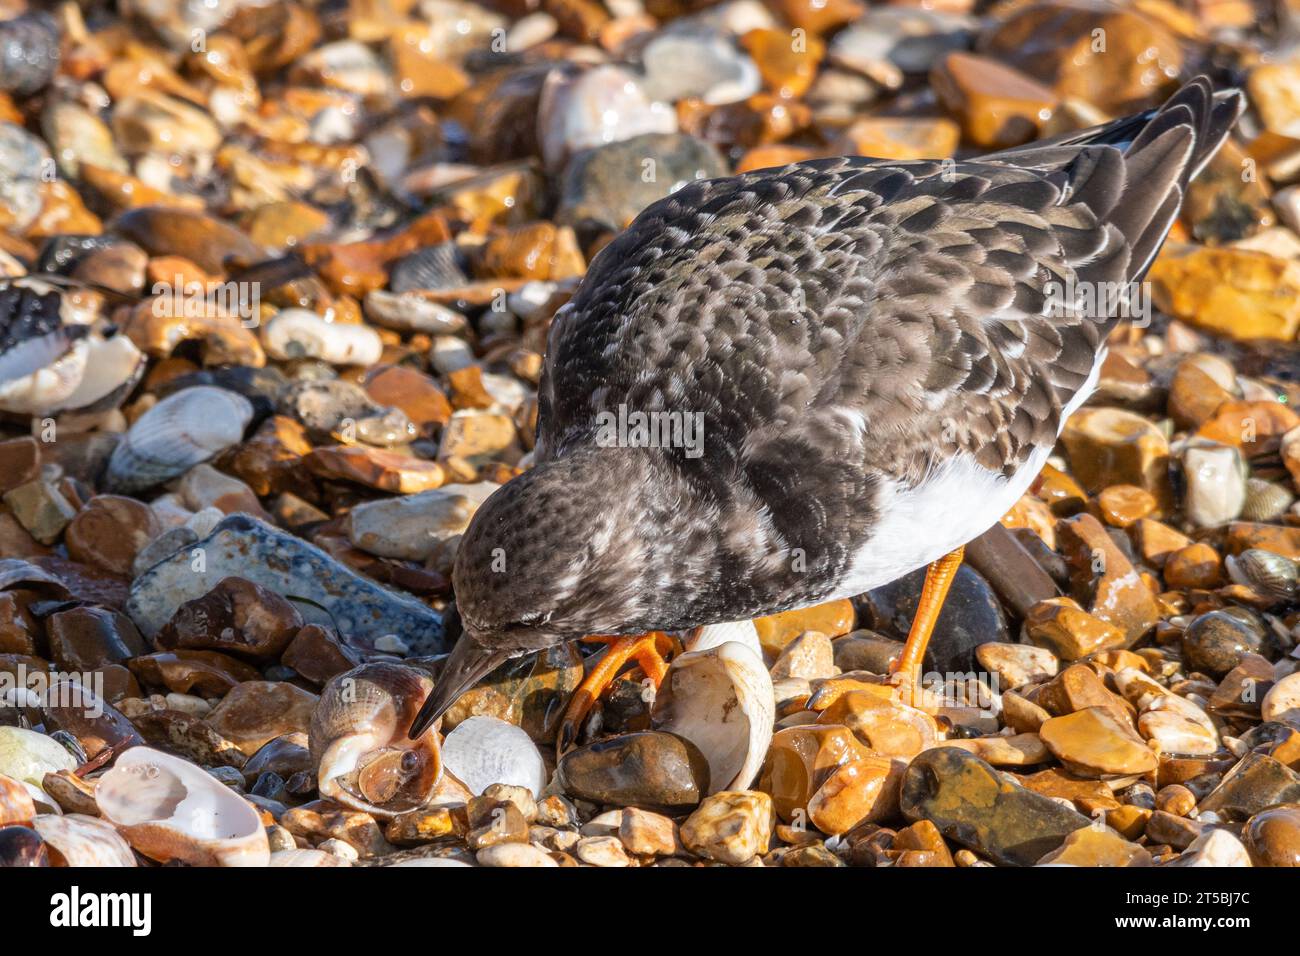 Una pietra arenaria (interpreta Arenaria) che si nutre di un uccello che dà da mangiare a un comune mollusco (Buccinum undatum) su una spiaggia dell'Hampshire, Inghilterra, Regno Unito Foto Stock